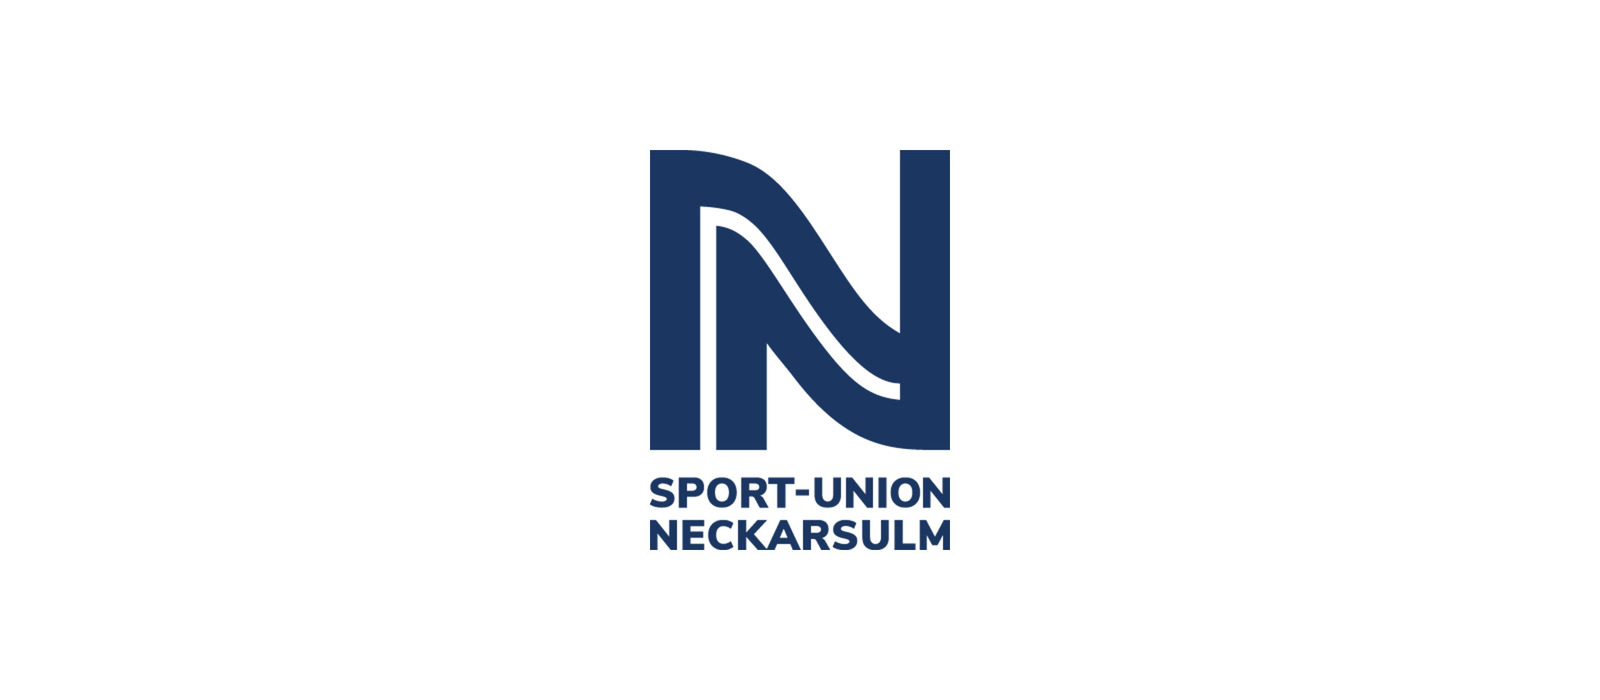 Sport-Union Neckarsulm vs VfL Oldenburg